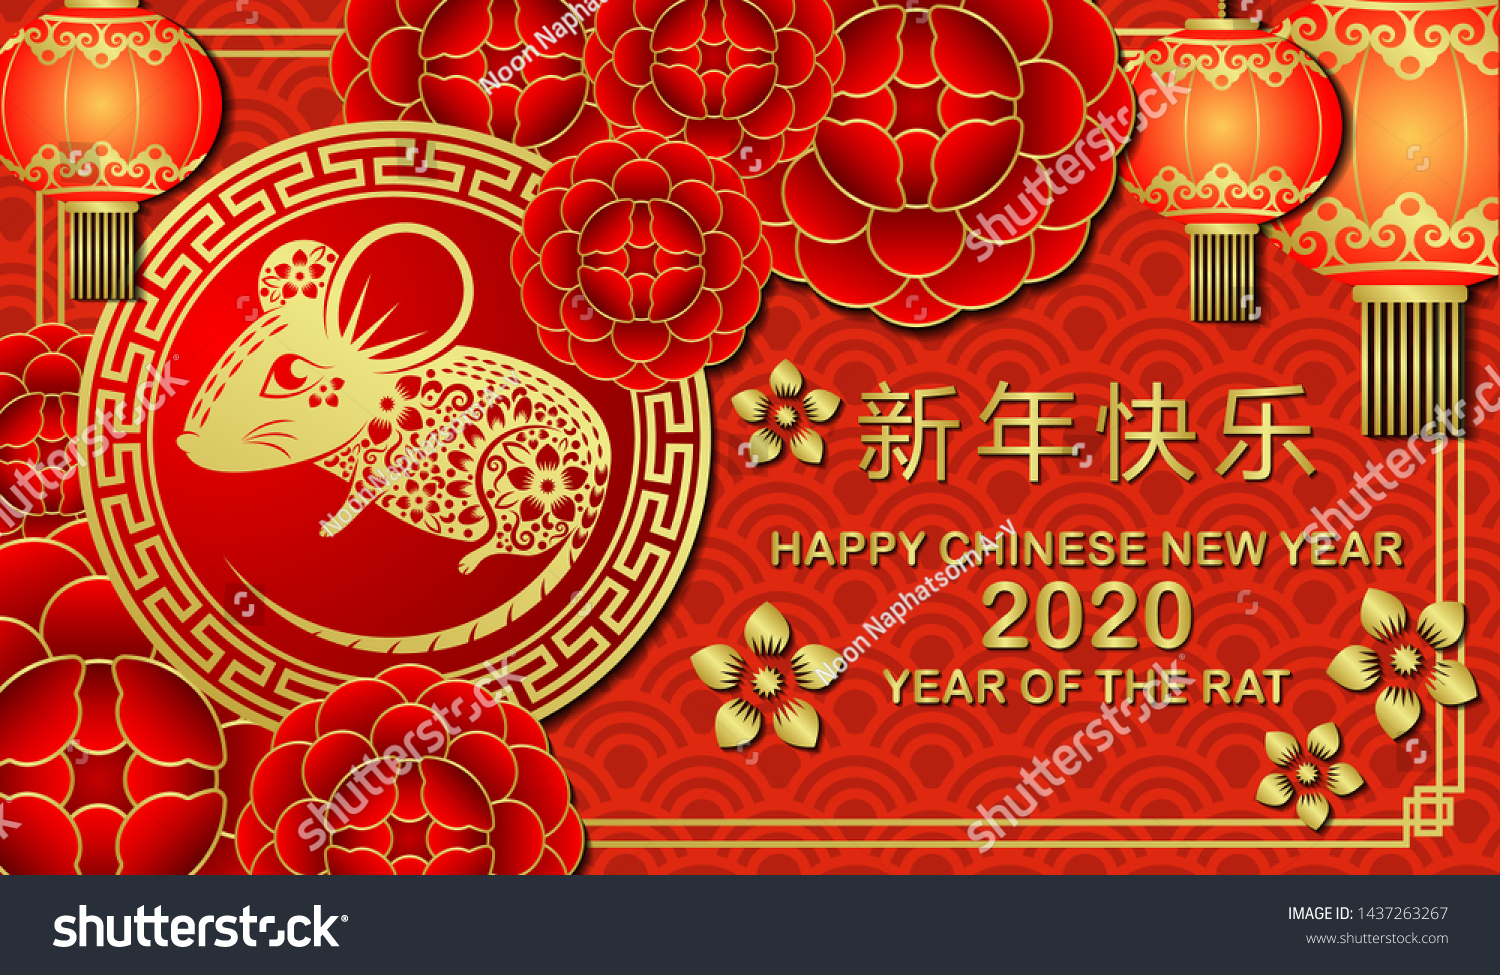 年の新年の干支 抽象的な背景に壁紙 ホリデーバナー グリーティングカード Eps10 中国語訳 新年おめでとう のベクター画像素材 ロイヤリティフリー